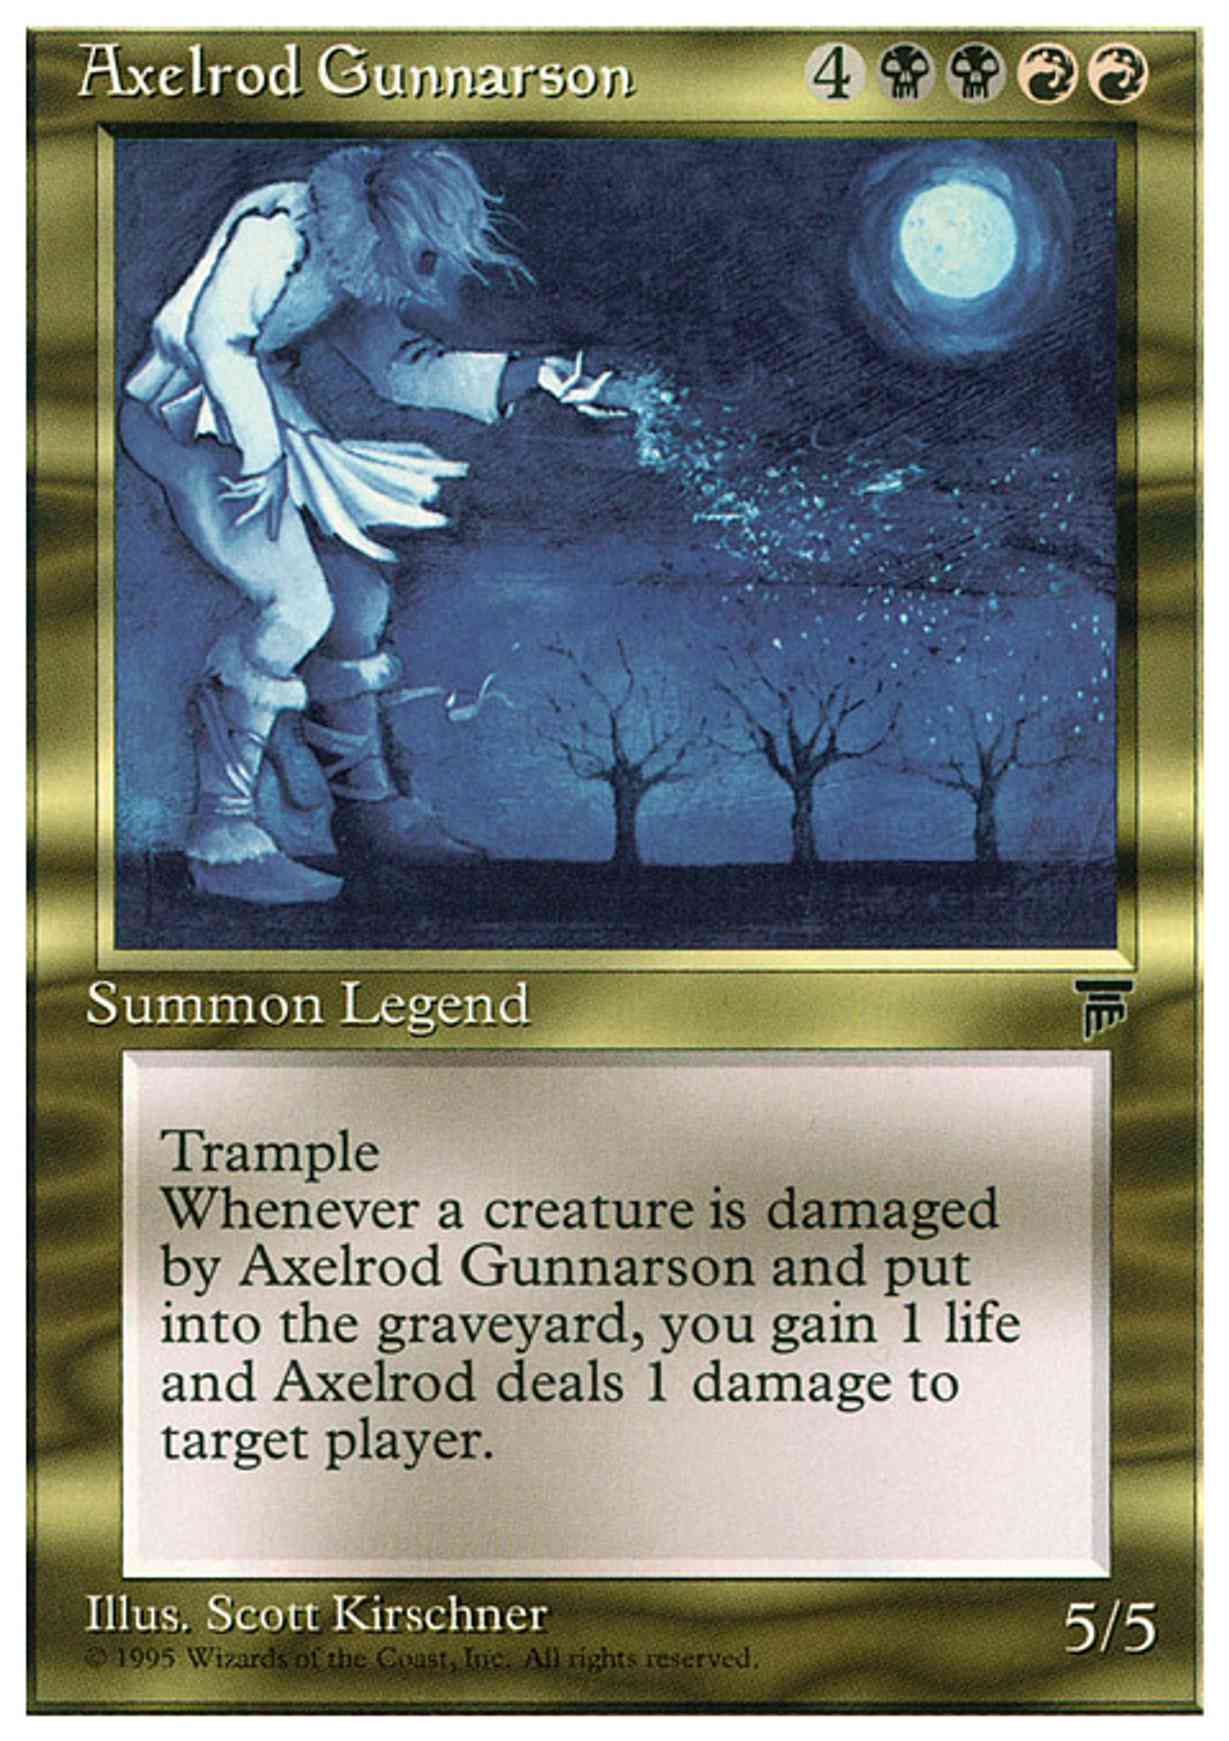 Axelrod Gunnarson magic card front